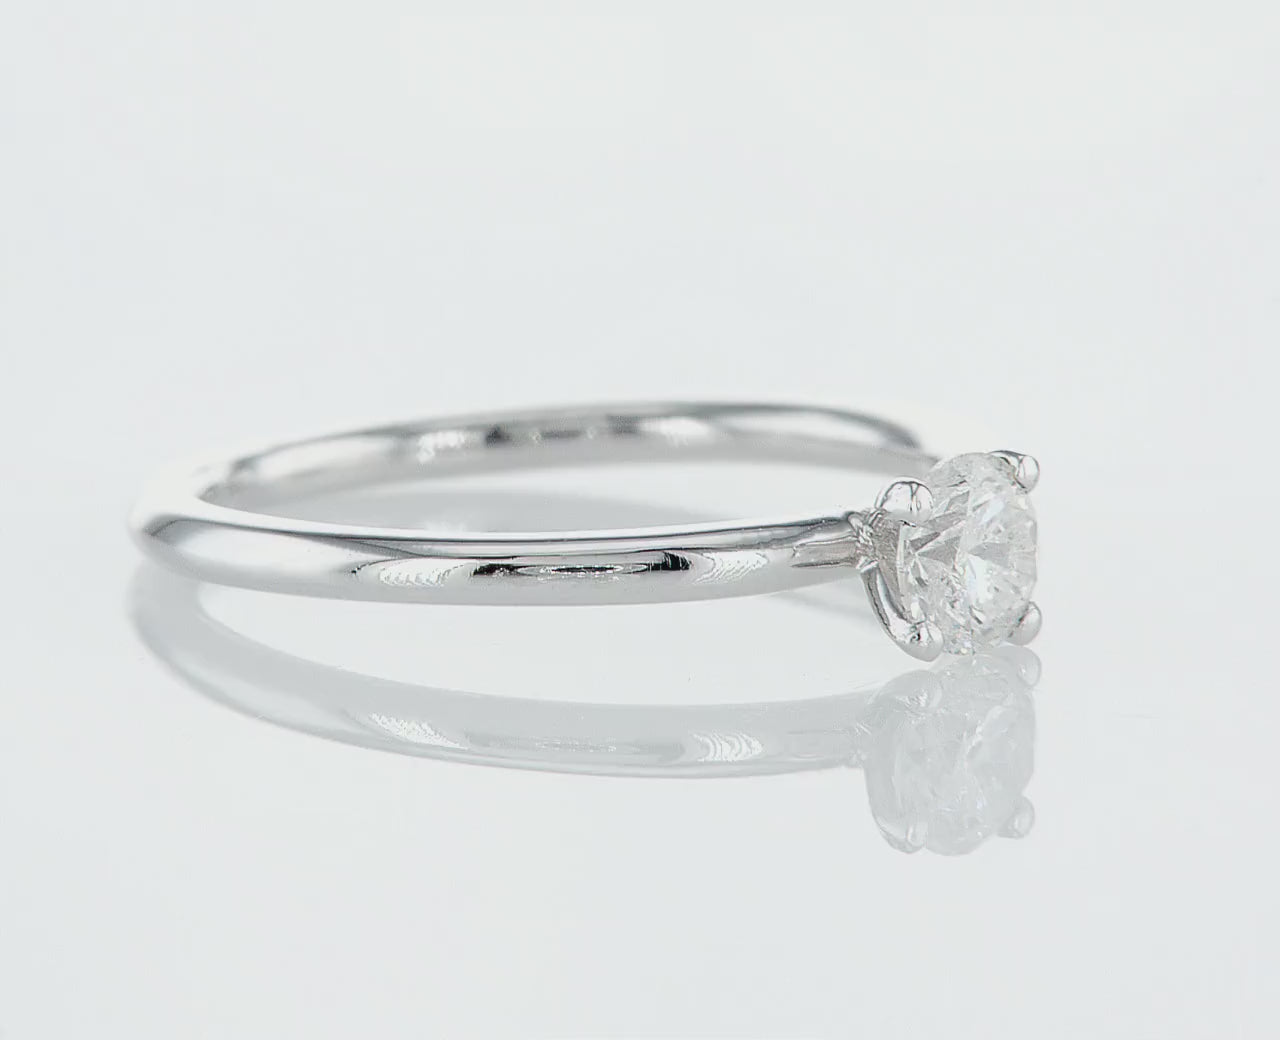 טבעת אירוסין בלה מרשימה מזהב לבן בסגנון מעוגל, מכילה יהלום טבעי עגול מרכזי במשקל 0.44 קראט. הטבעת הזו משלבת את היוקרה והברק של טבעת יהלומים עם האלגנטיות הנצחית, ומציעה יופי ואופנה שמתאימים לאירוע של פעם בחיים.